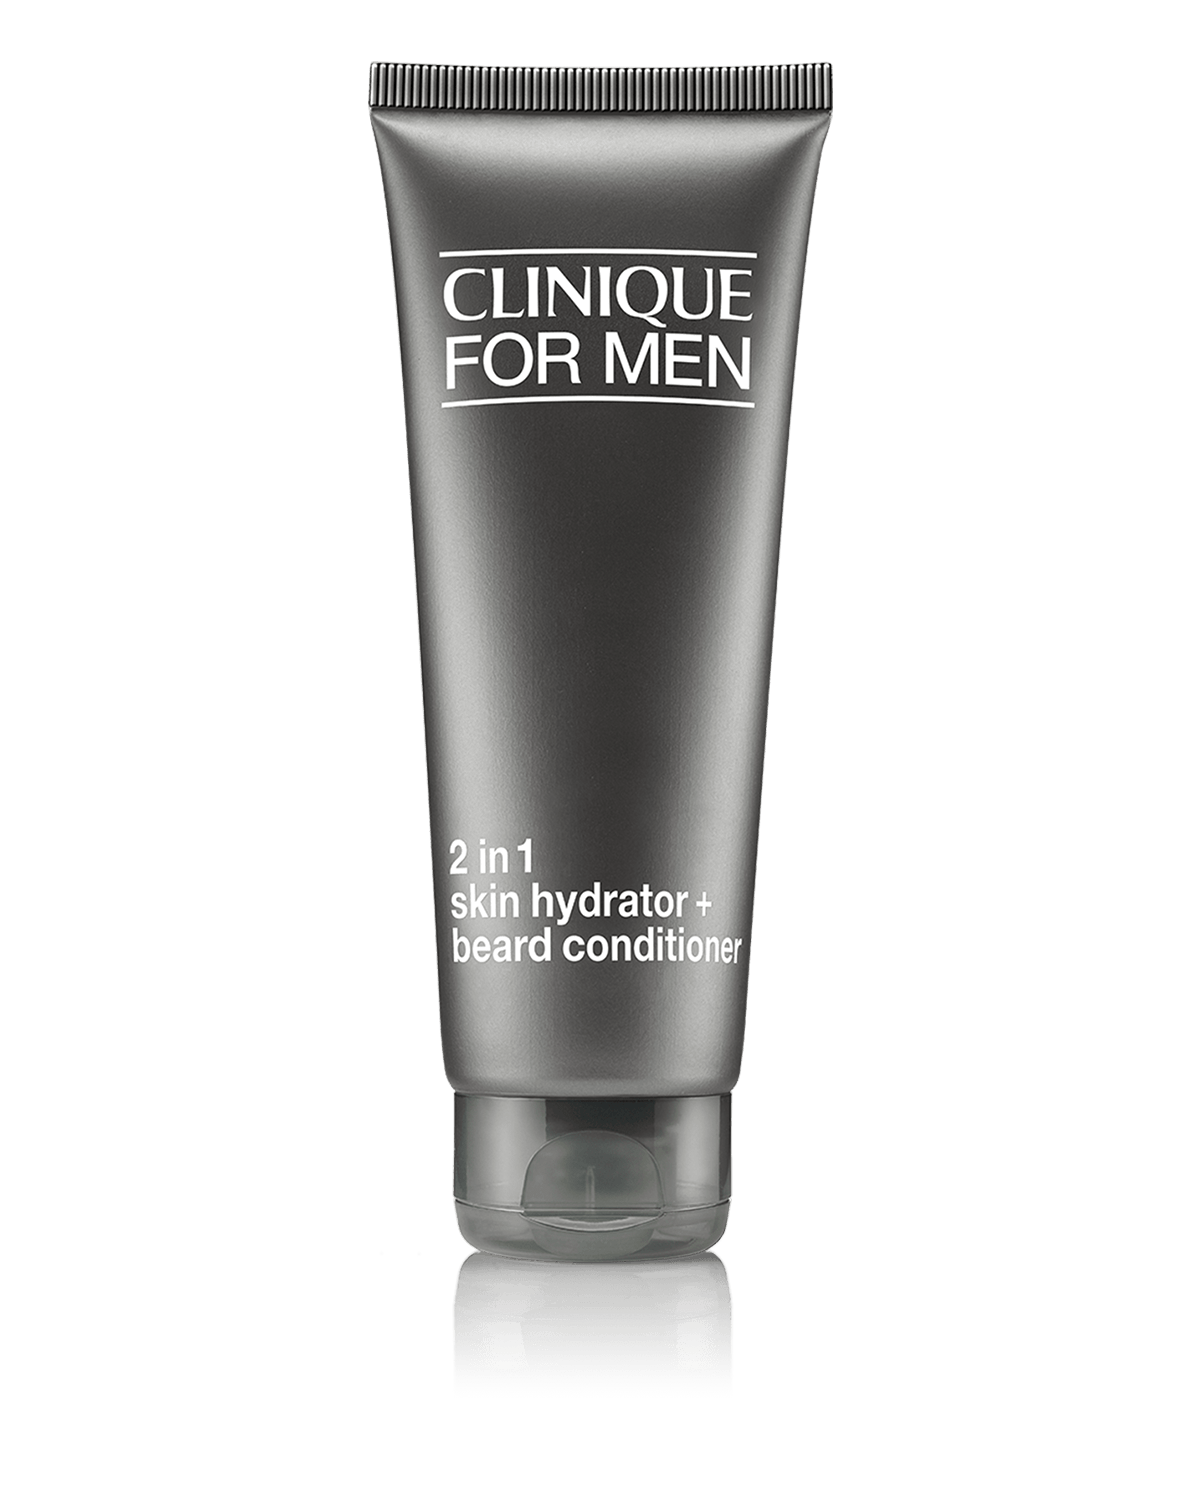 Clinique For Men 2 in 1 skin hydrator + beard